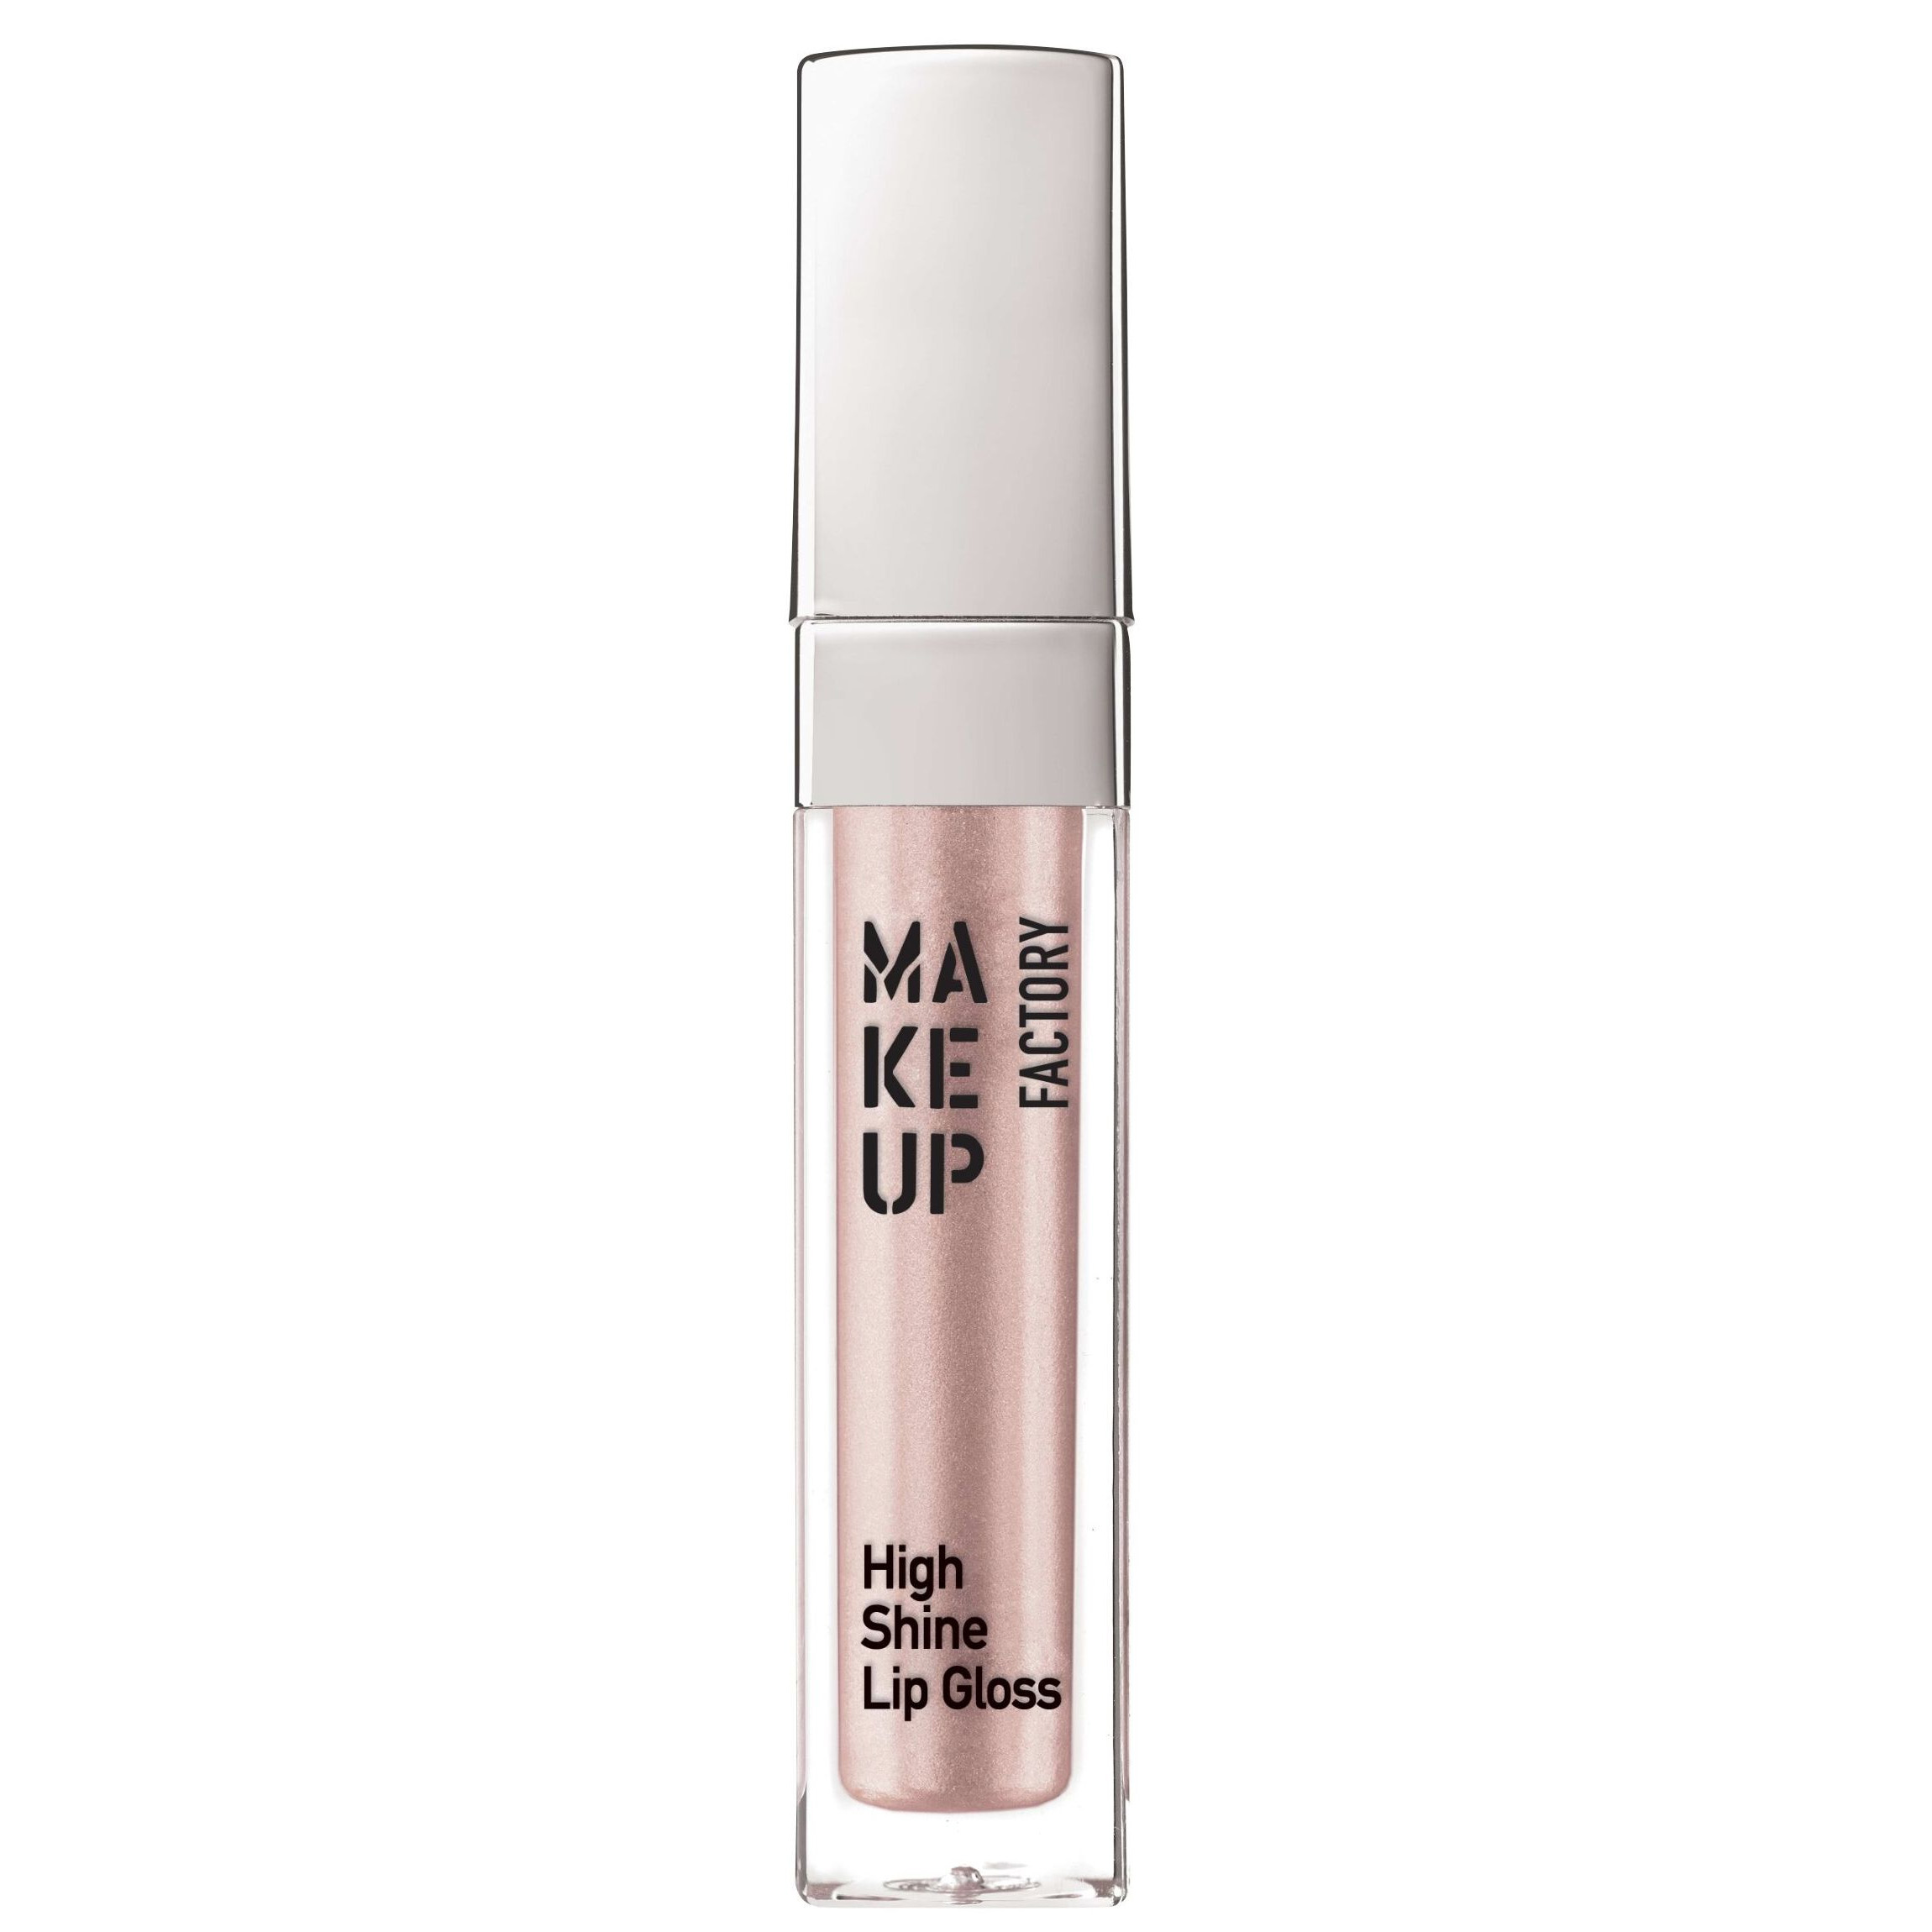 Блеск для губ MAKE UP FACTORY с эффектом влажных губ, 10 молочно-розовый перламутр, 6,5 мл make up factory блеск для губ с эффектом влажных губ тон 04 чистый розовый high shine lip gloss 6 5 мл